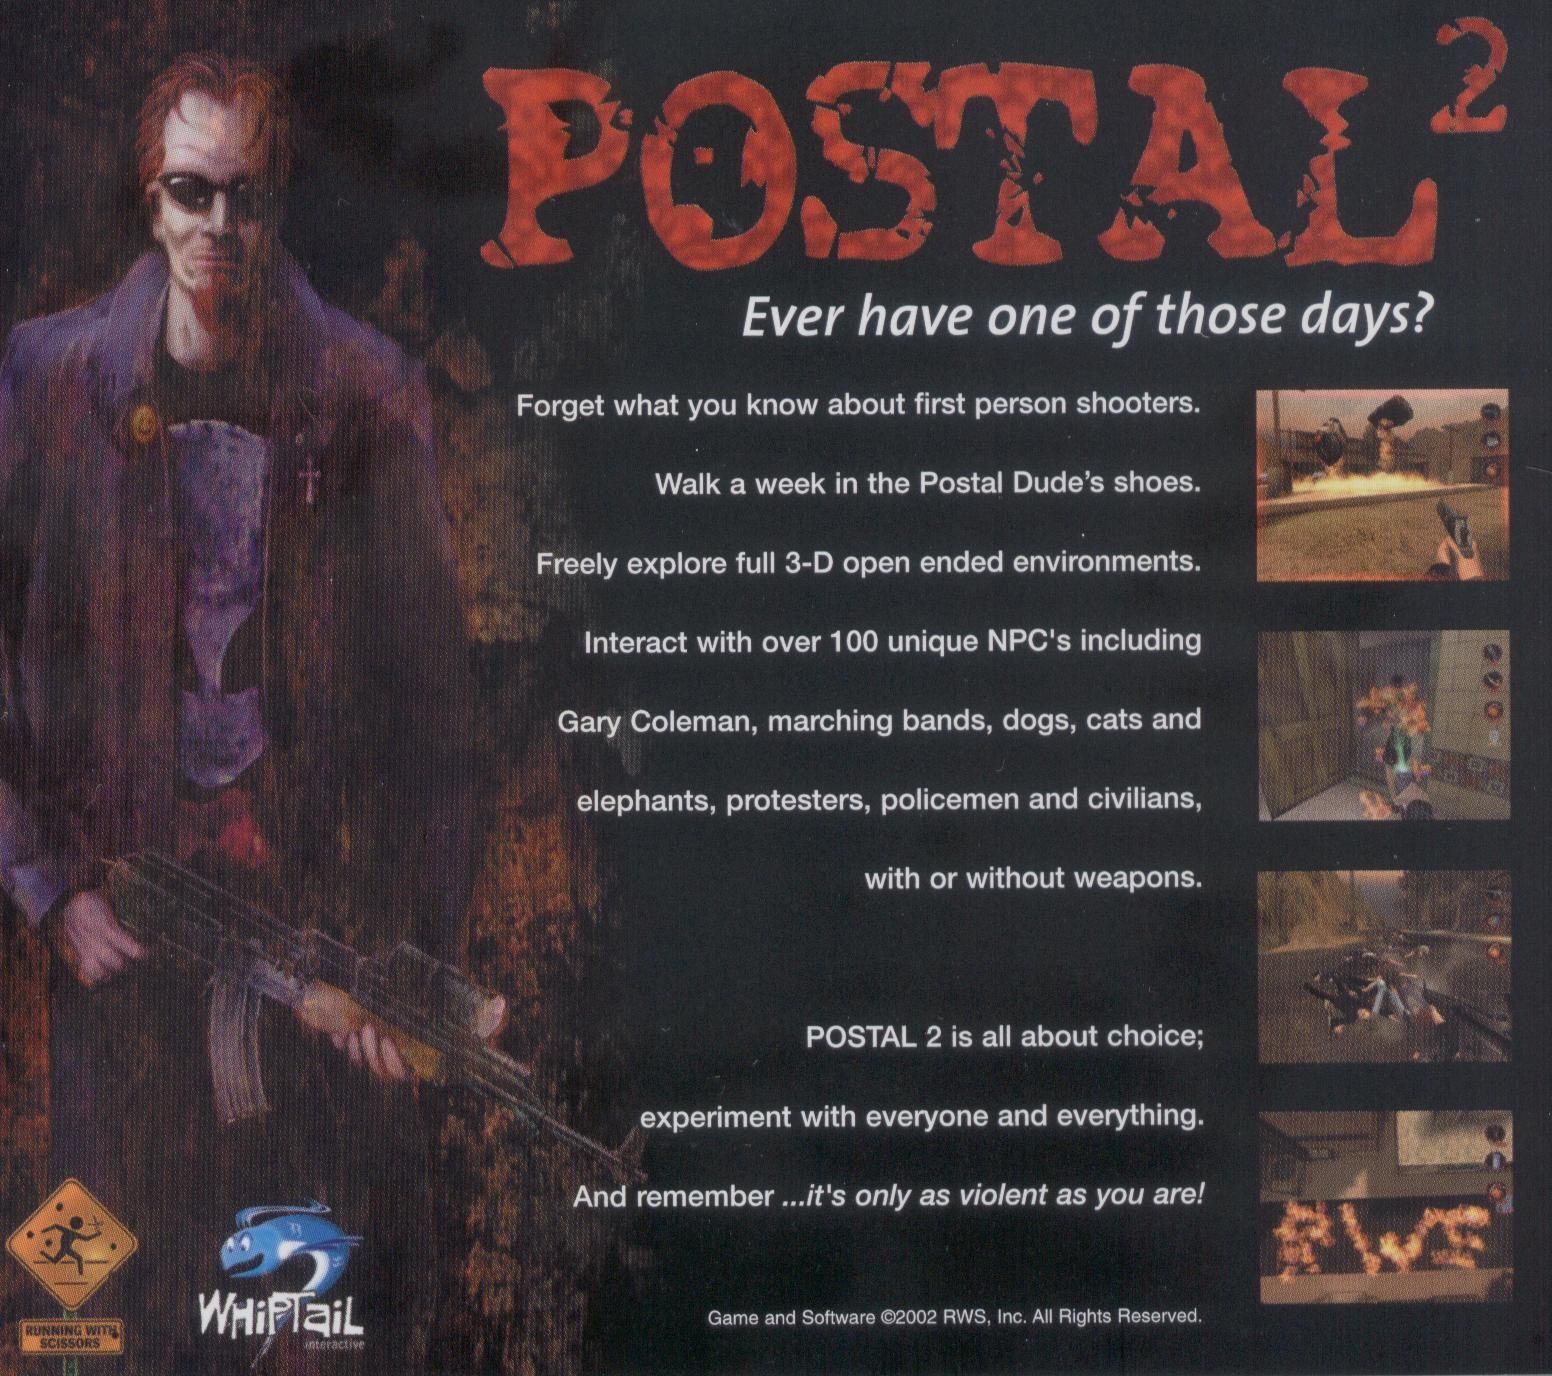 Postal 2 awp delete review торрент фото 48